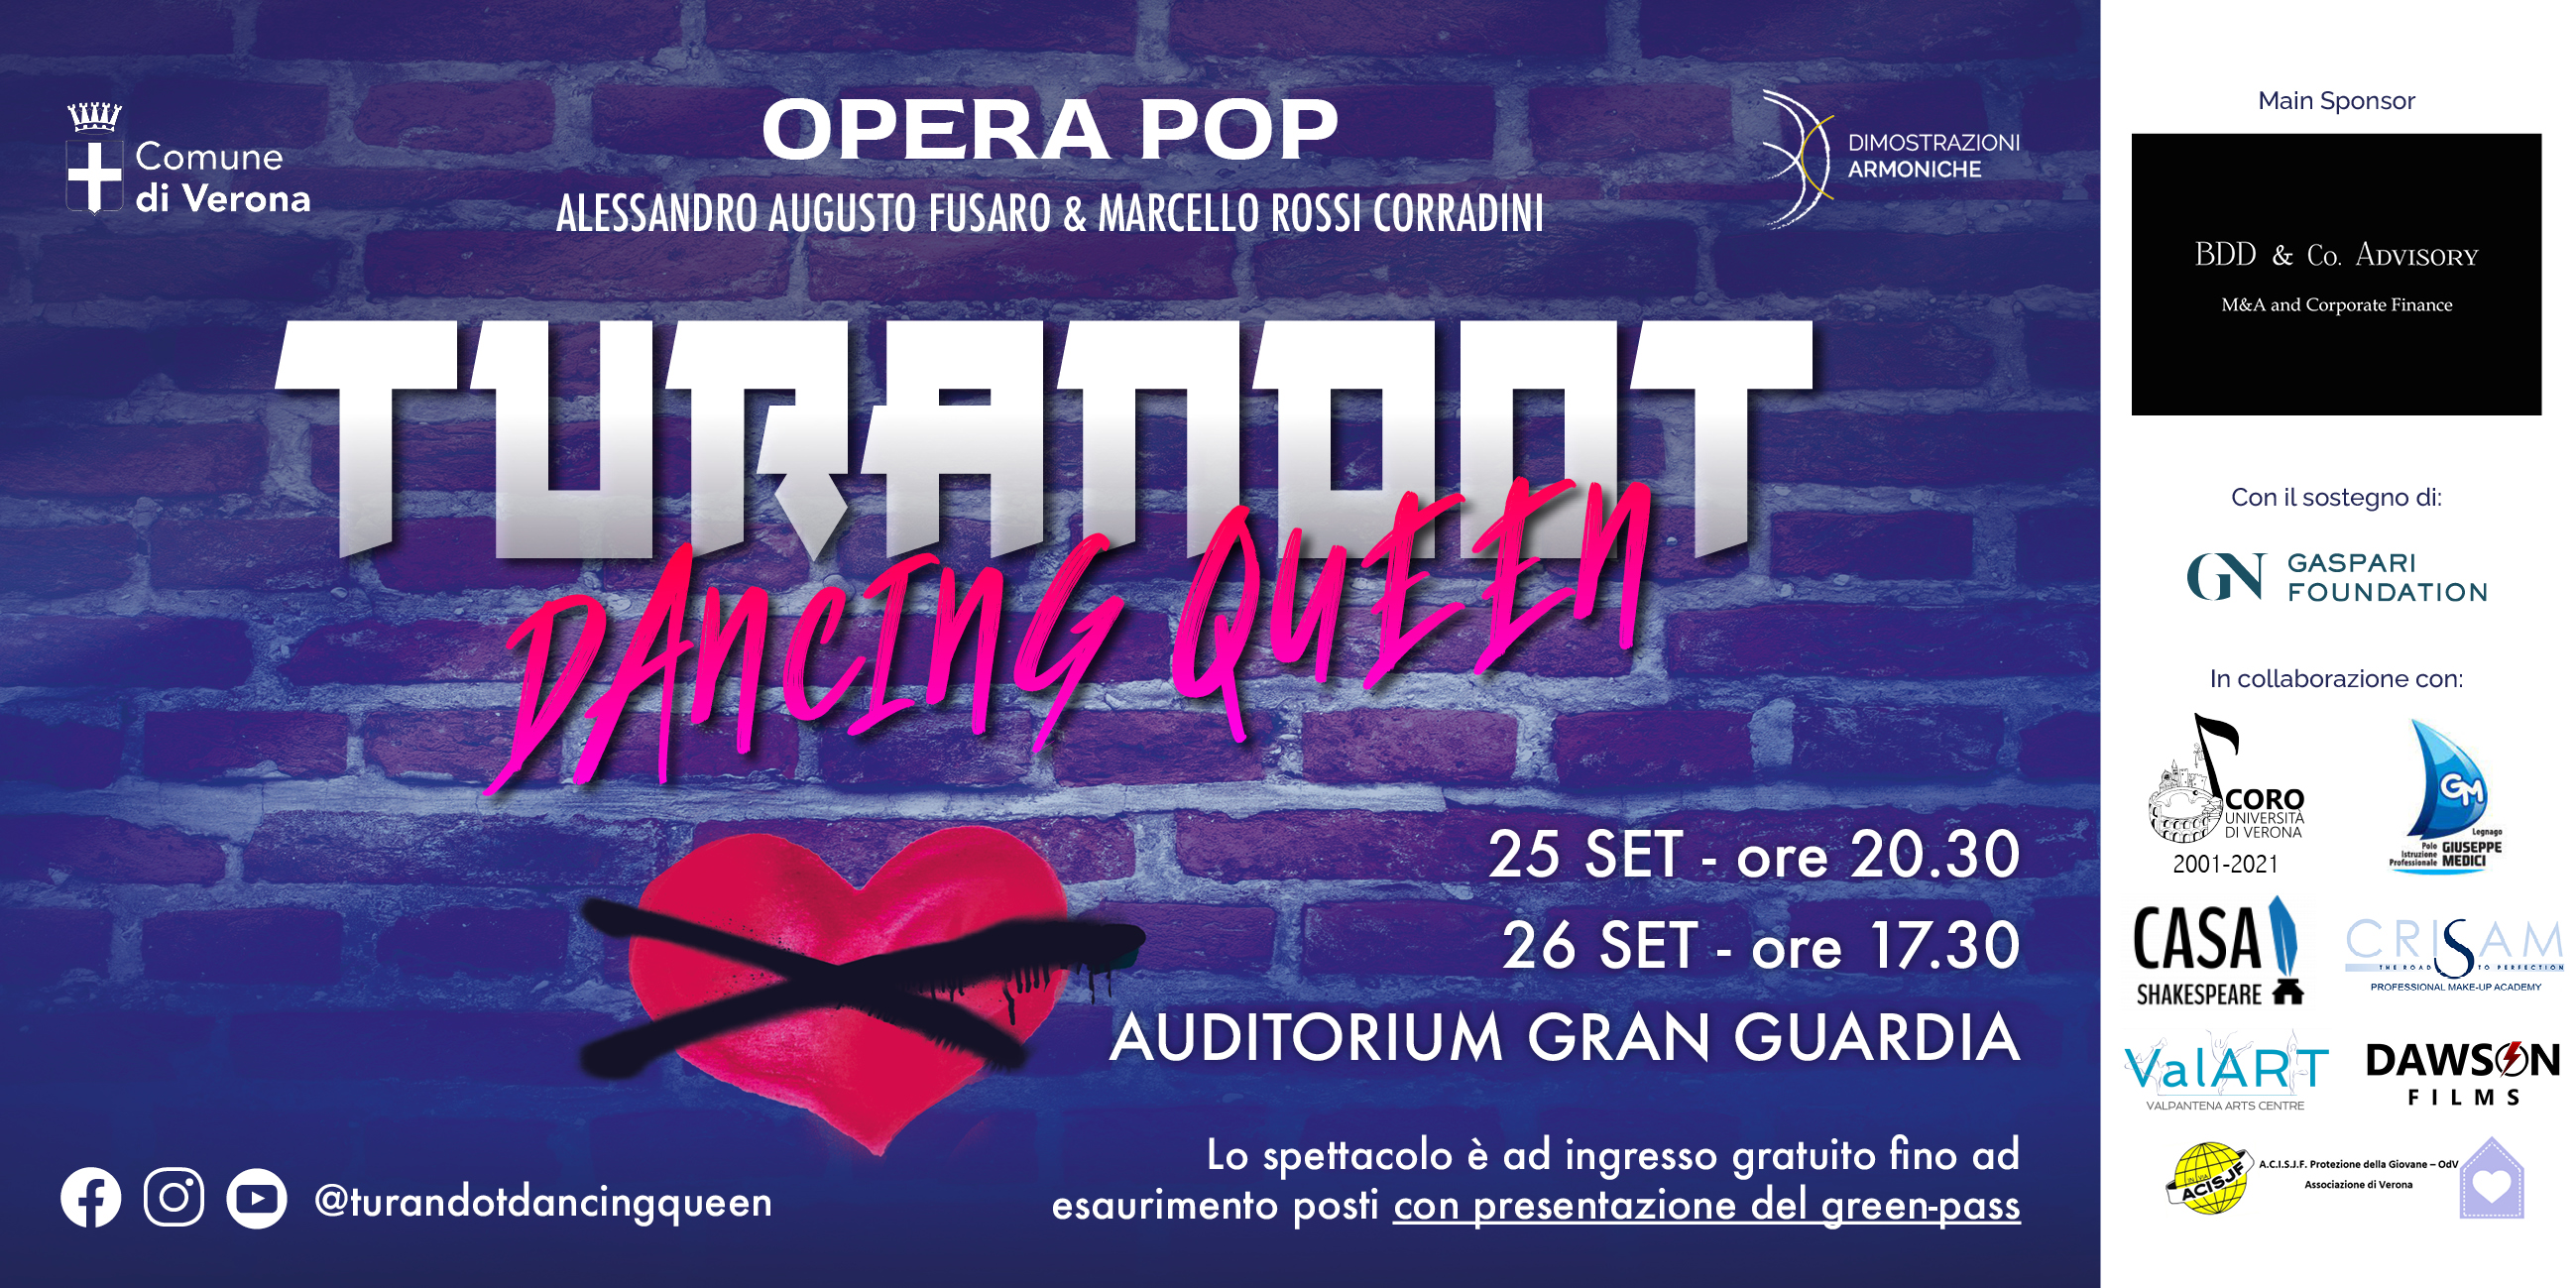 Turandot Dancing Queen - Opera Pop - BDD & Co. Advisory supporta un Progetto musicale 